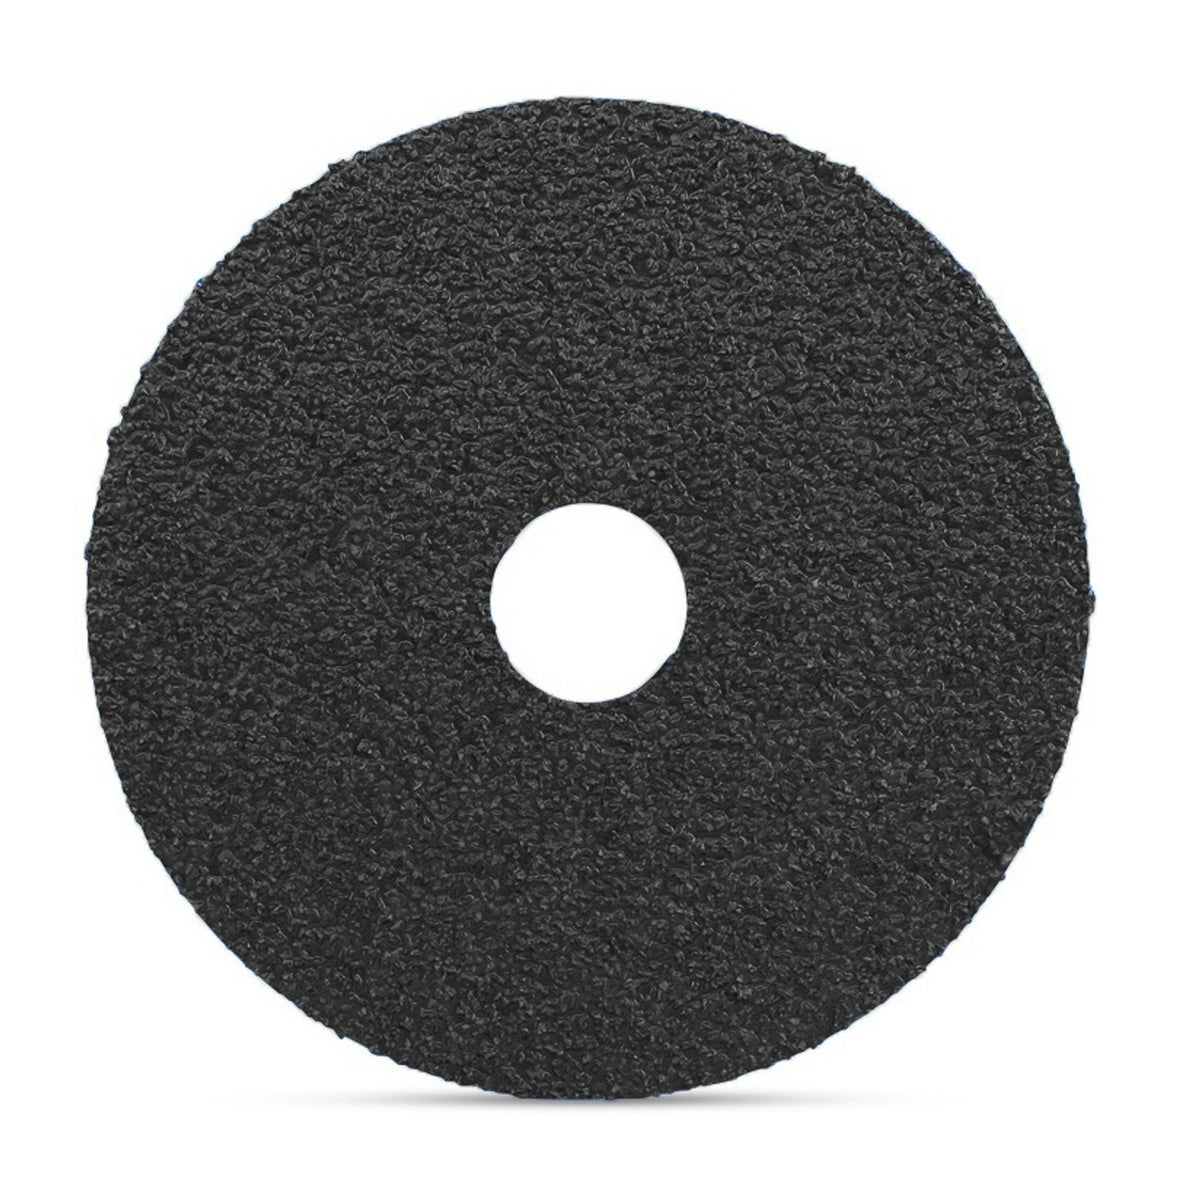 5" x 7/8" Silicon Carbide Resin Fiber Sanding Discs